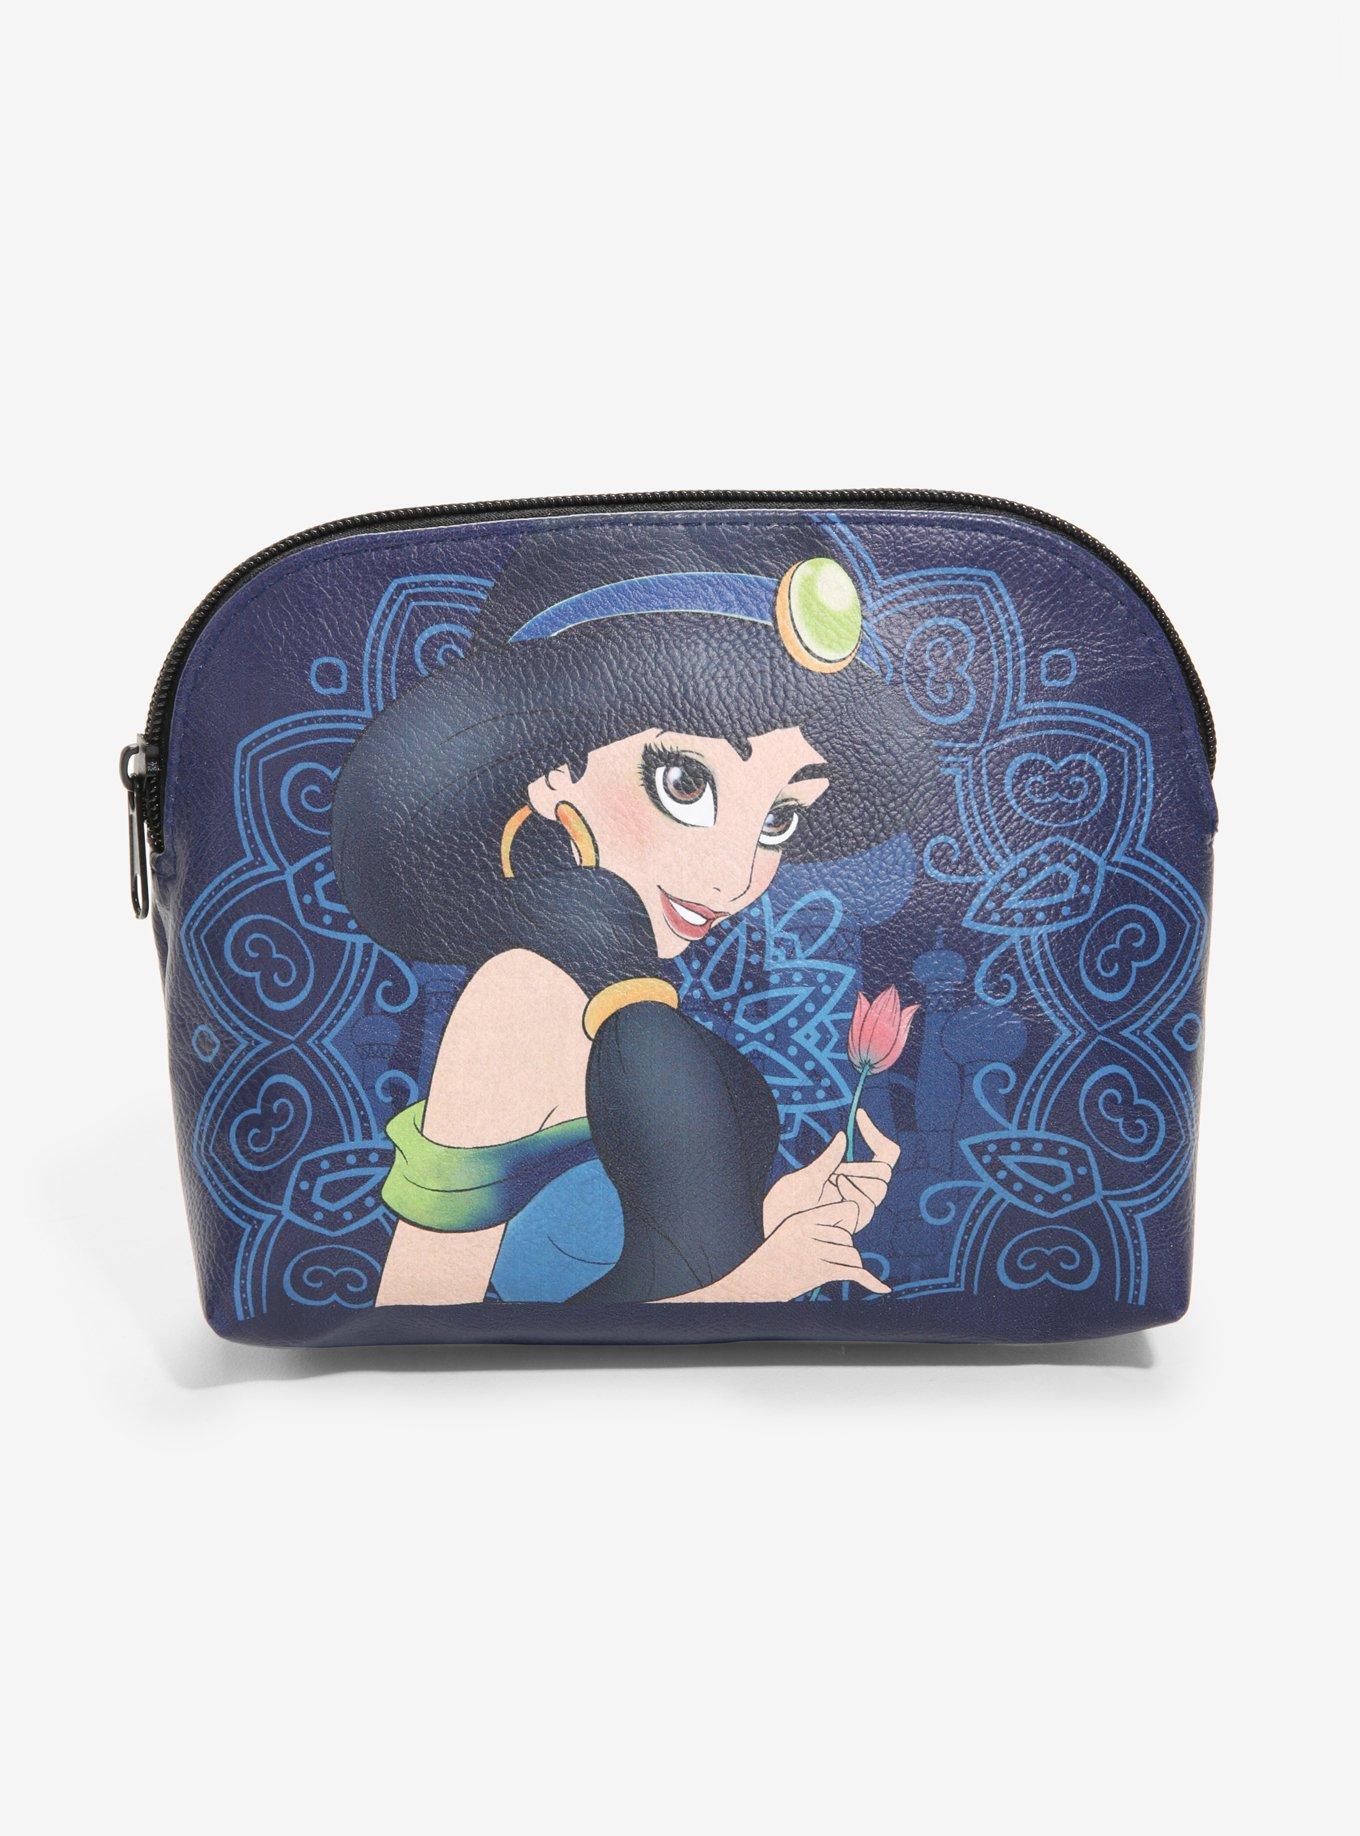 Disney Aladdin Princess Jasmine Makeup Bag, , hi-res